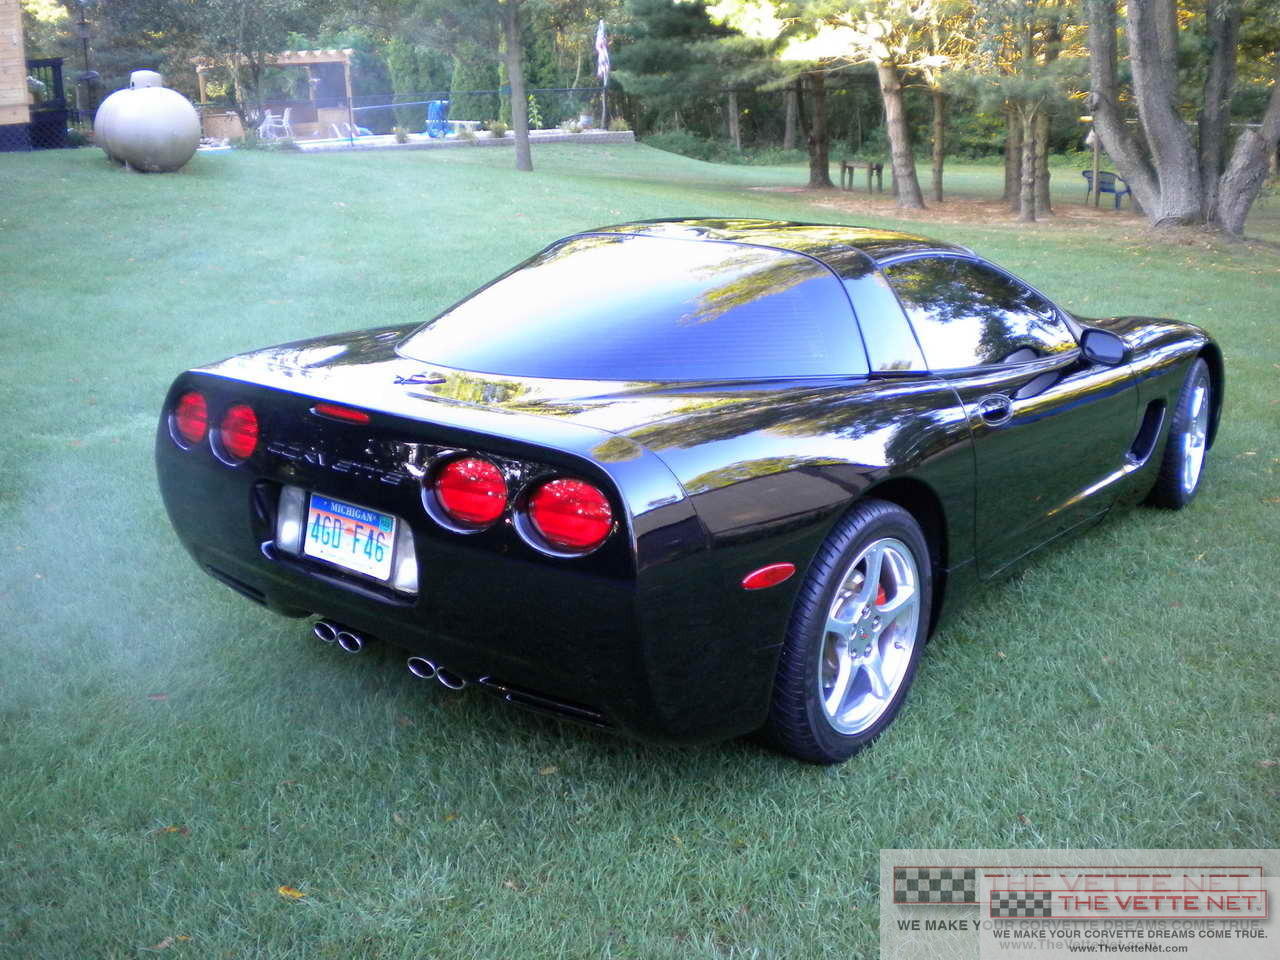 2004 Corvette Coupe Black